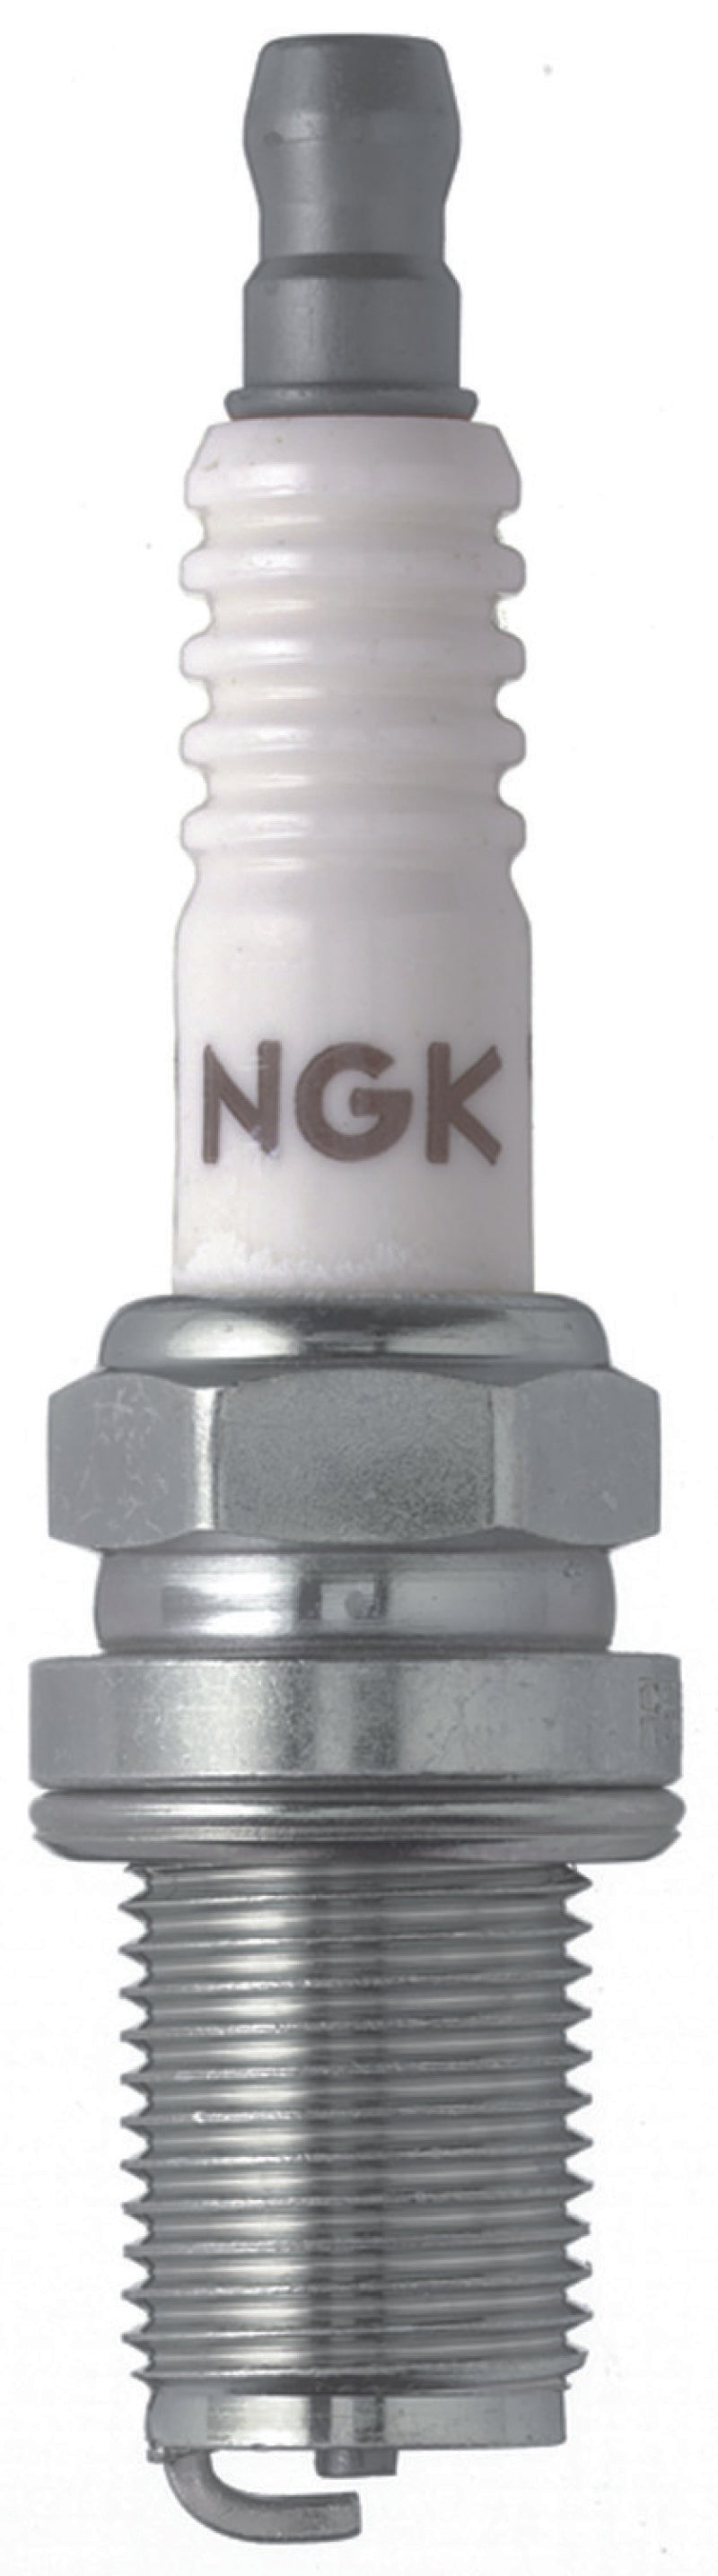 NGK Racing Spark Plug Box of 4 (R5671A-7)